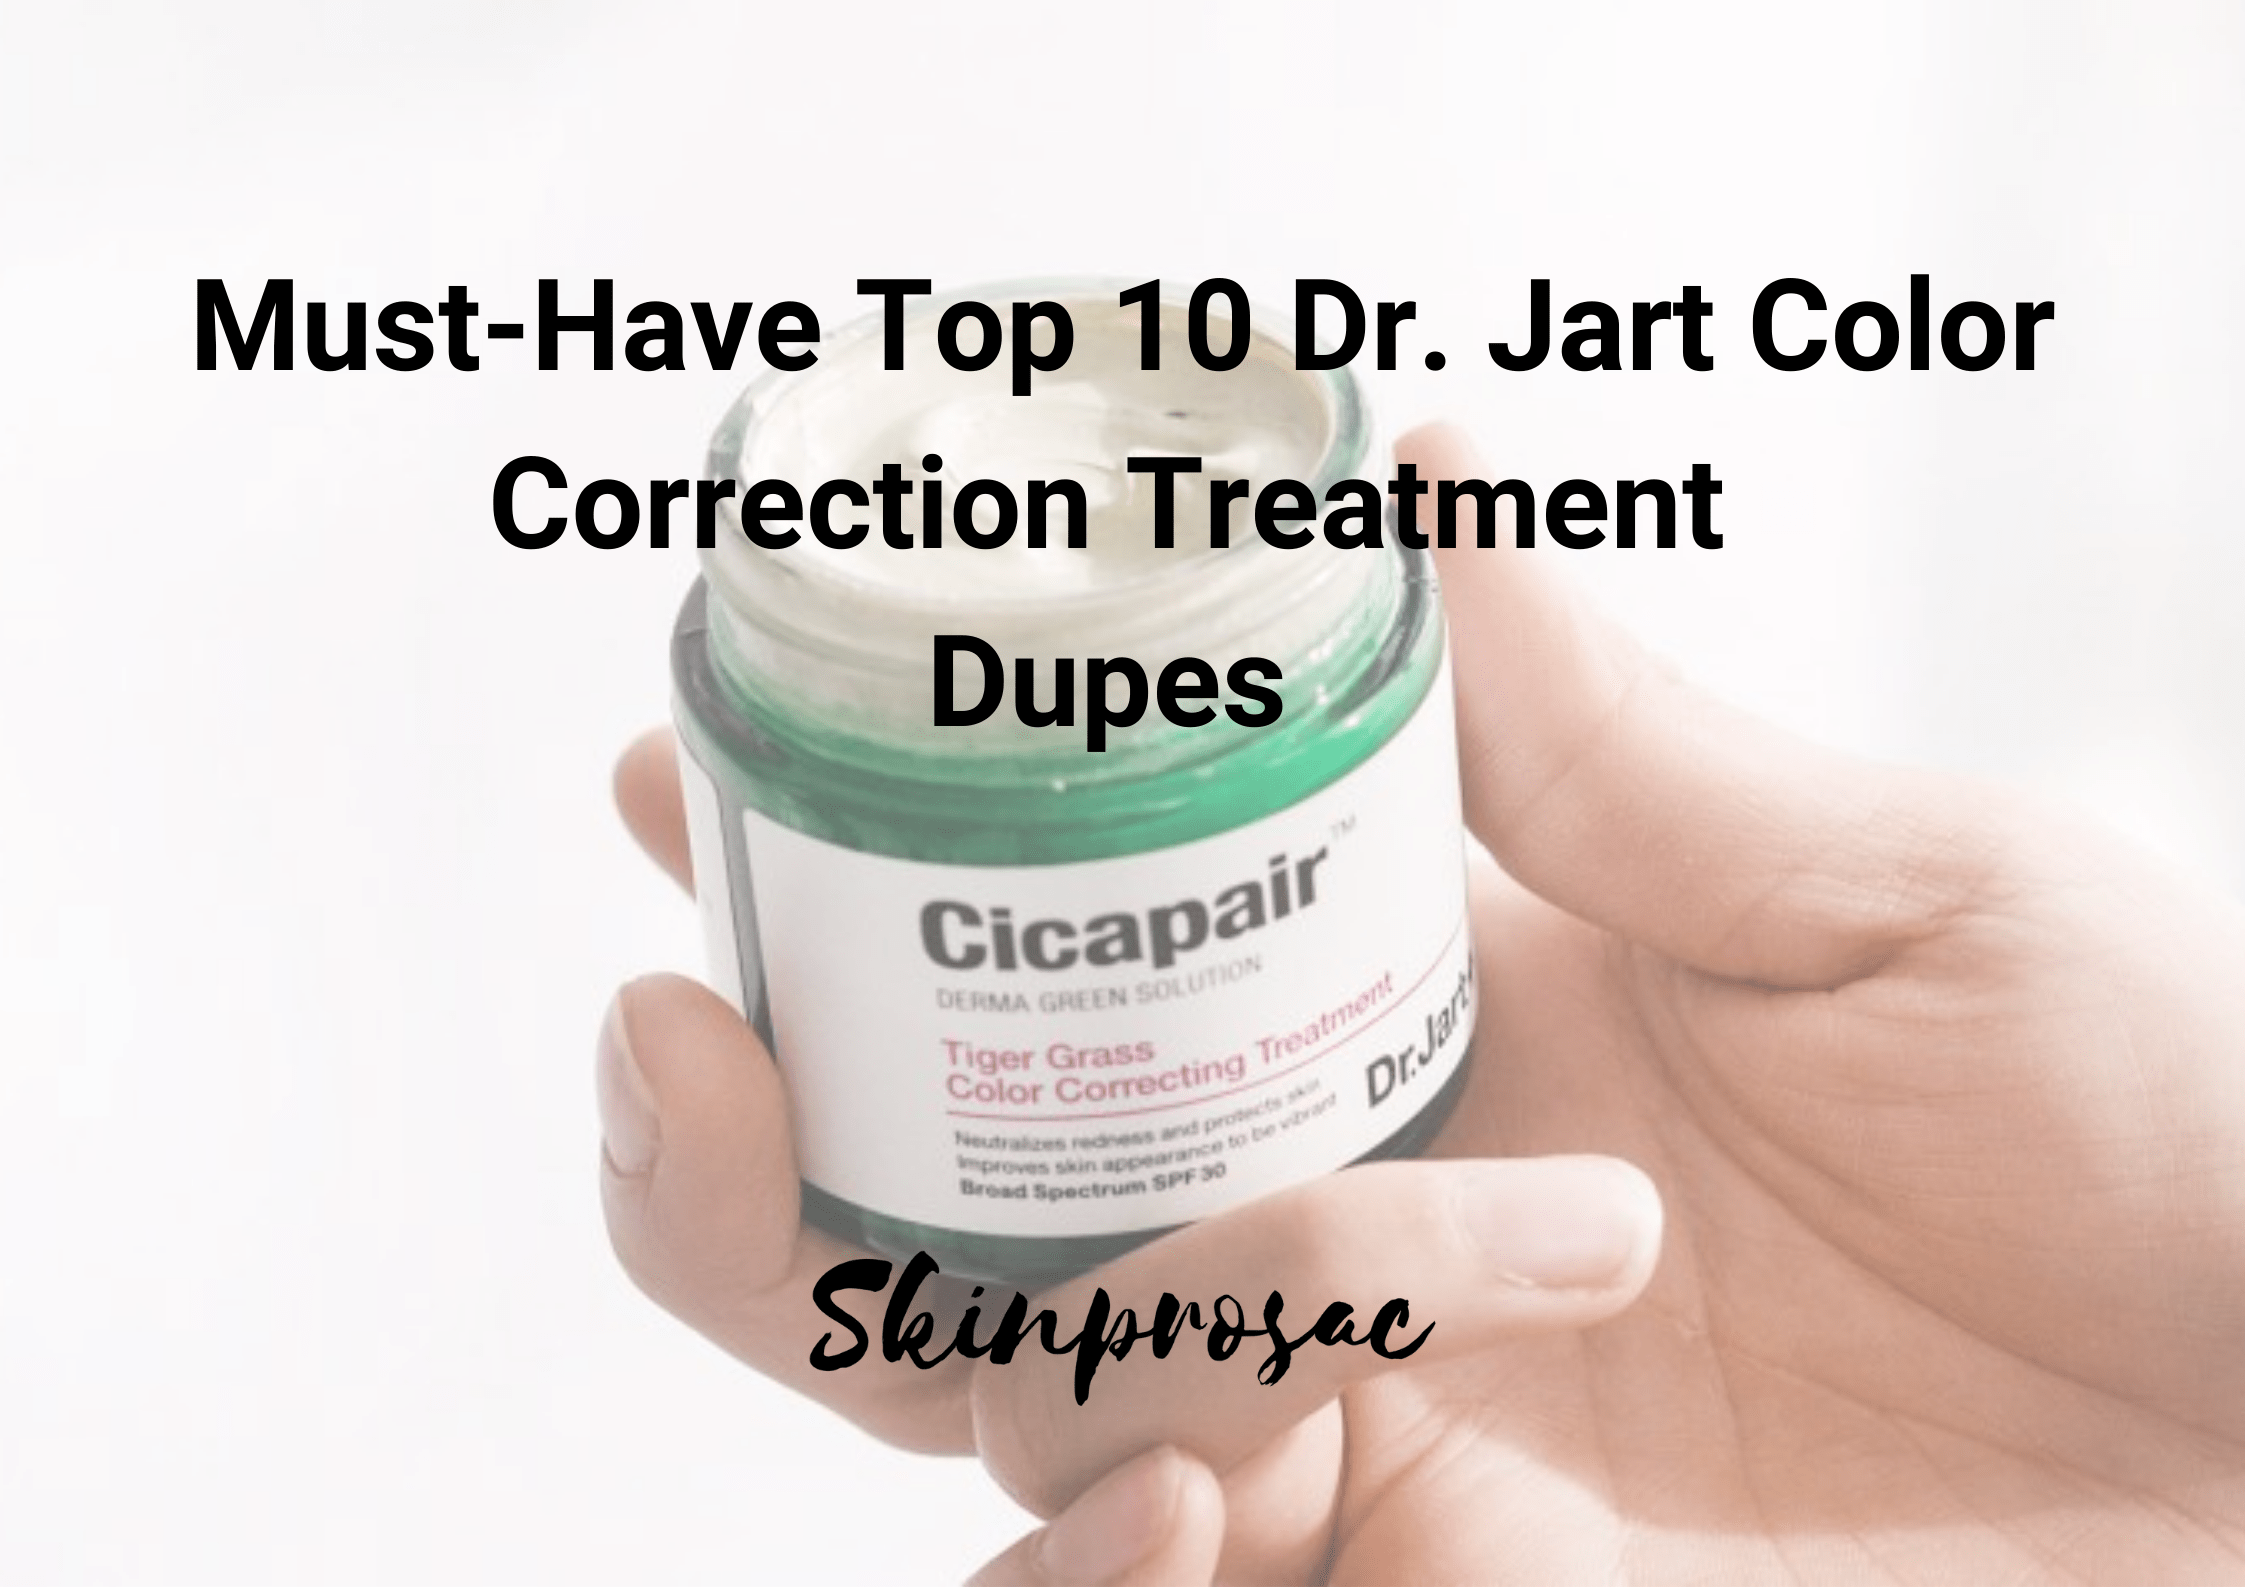 Dr. Jart Color Correction Treatment Dupe